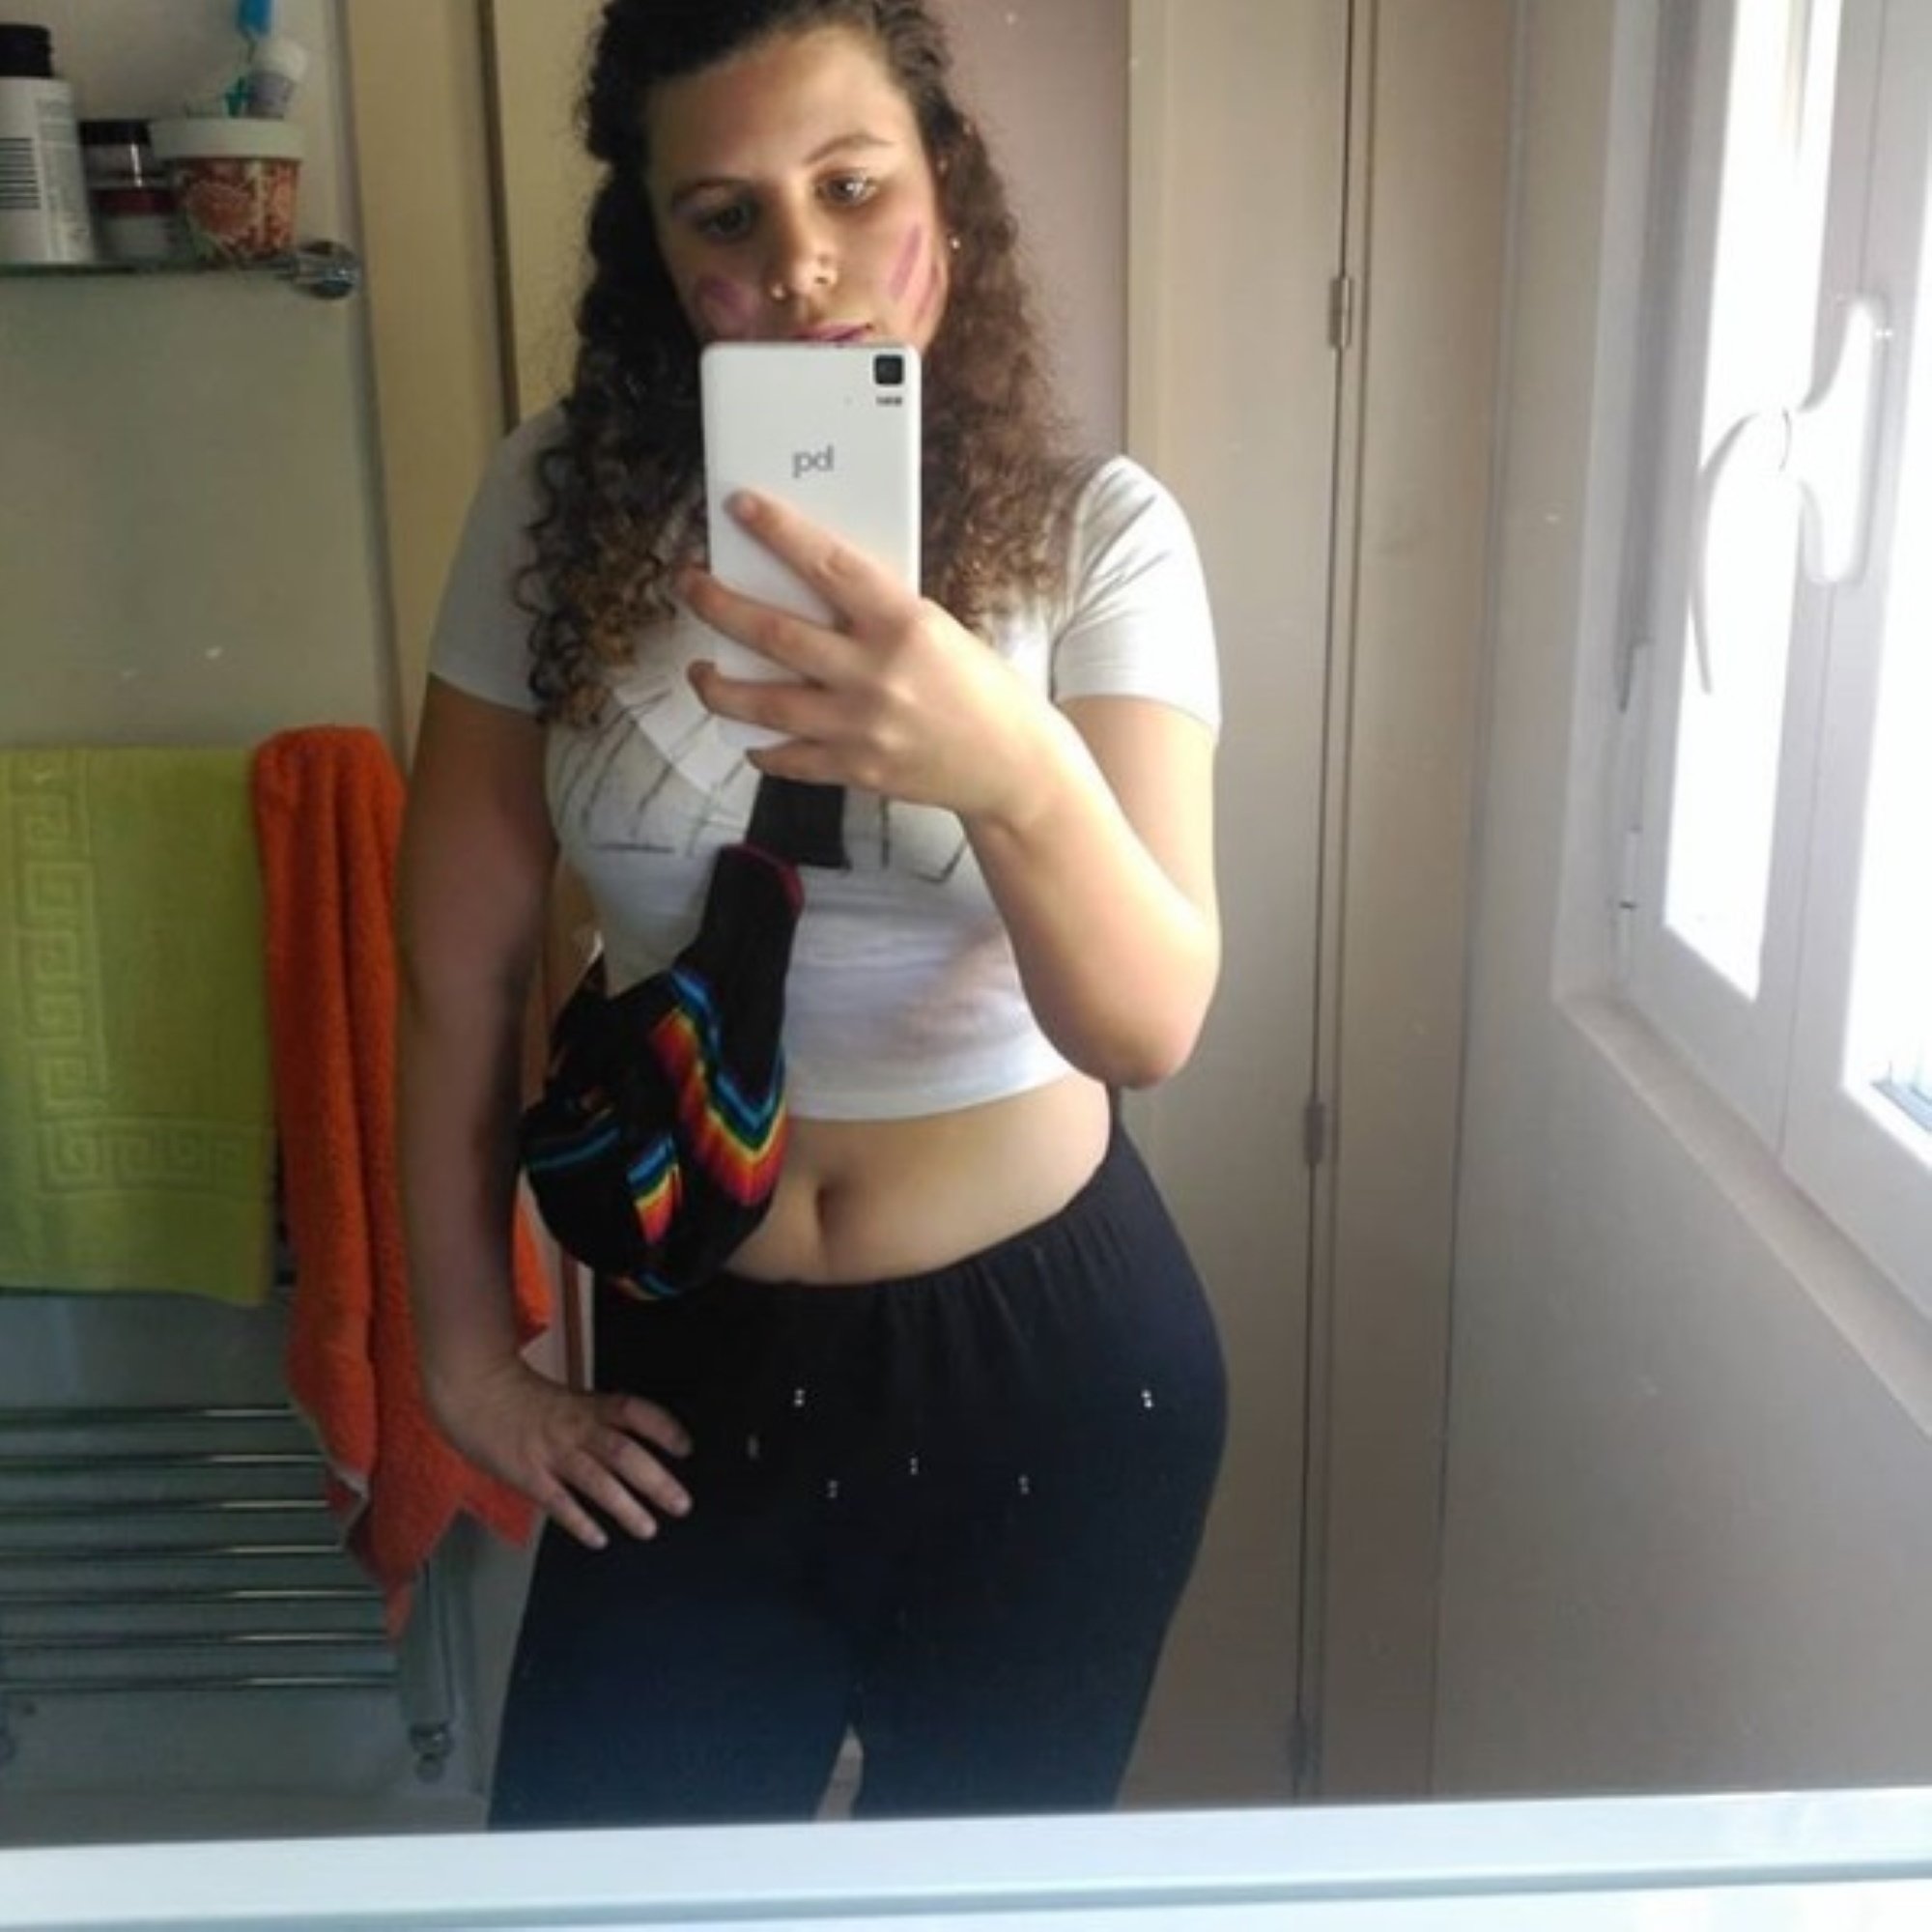 Carla Vigo, la sobrina rebelde de Letizia, hace público su Instagram: todas sus fotos